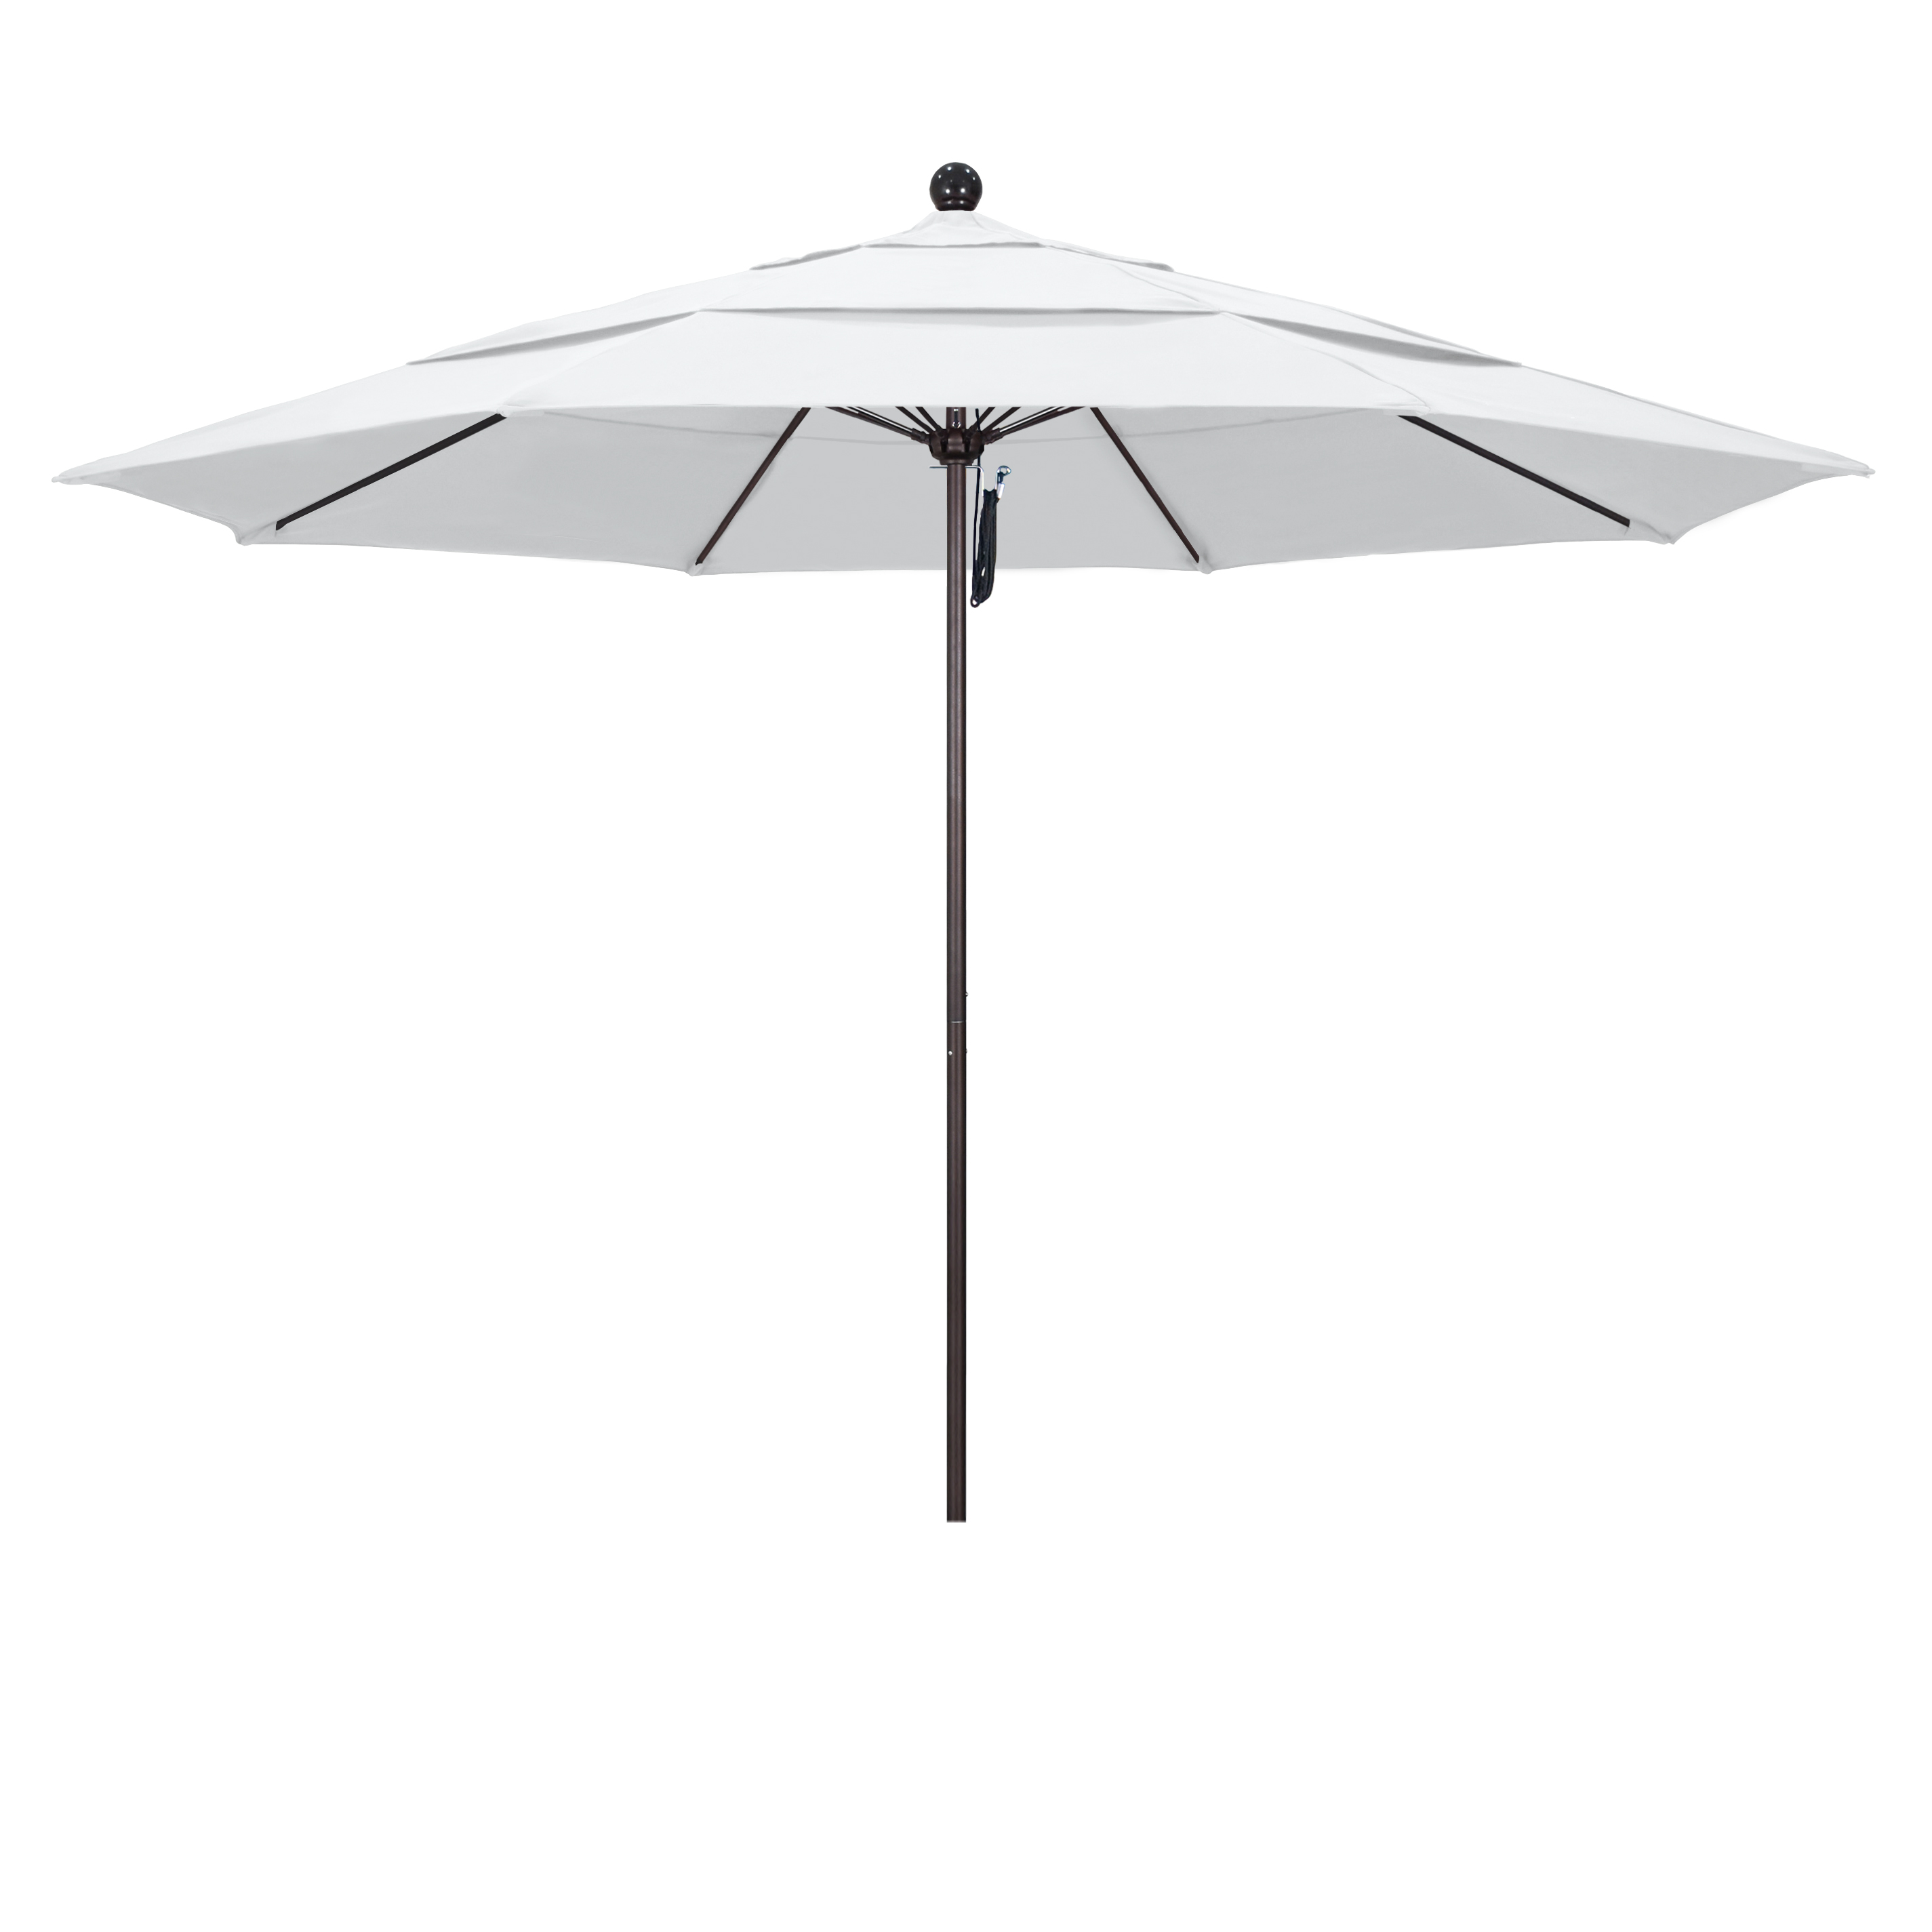 Picture of California Umbrella ALTO118117-F04-DWV 11 ft. Fiberglass Market Umbrella PO DVent Bronze-Olefin-White